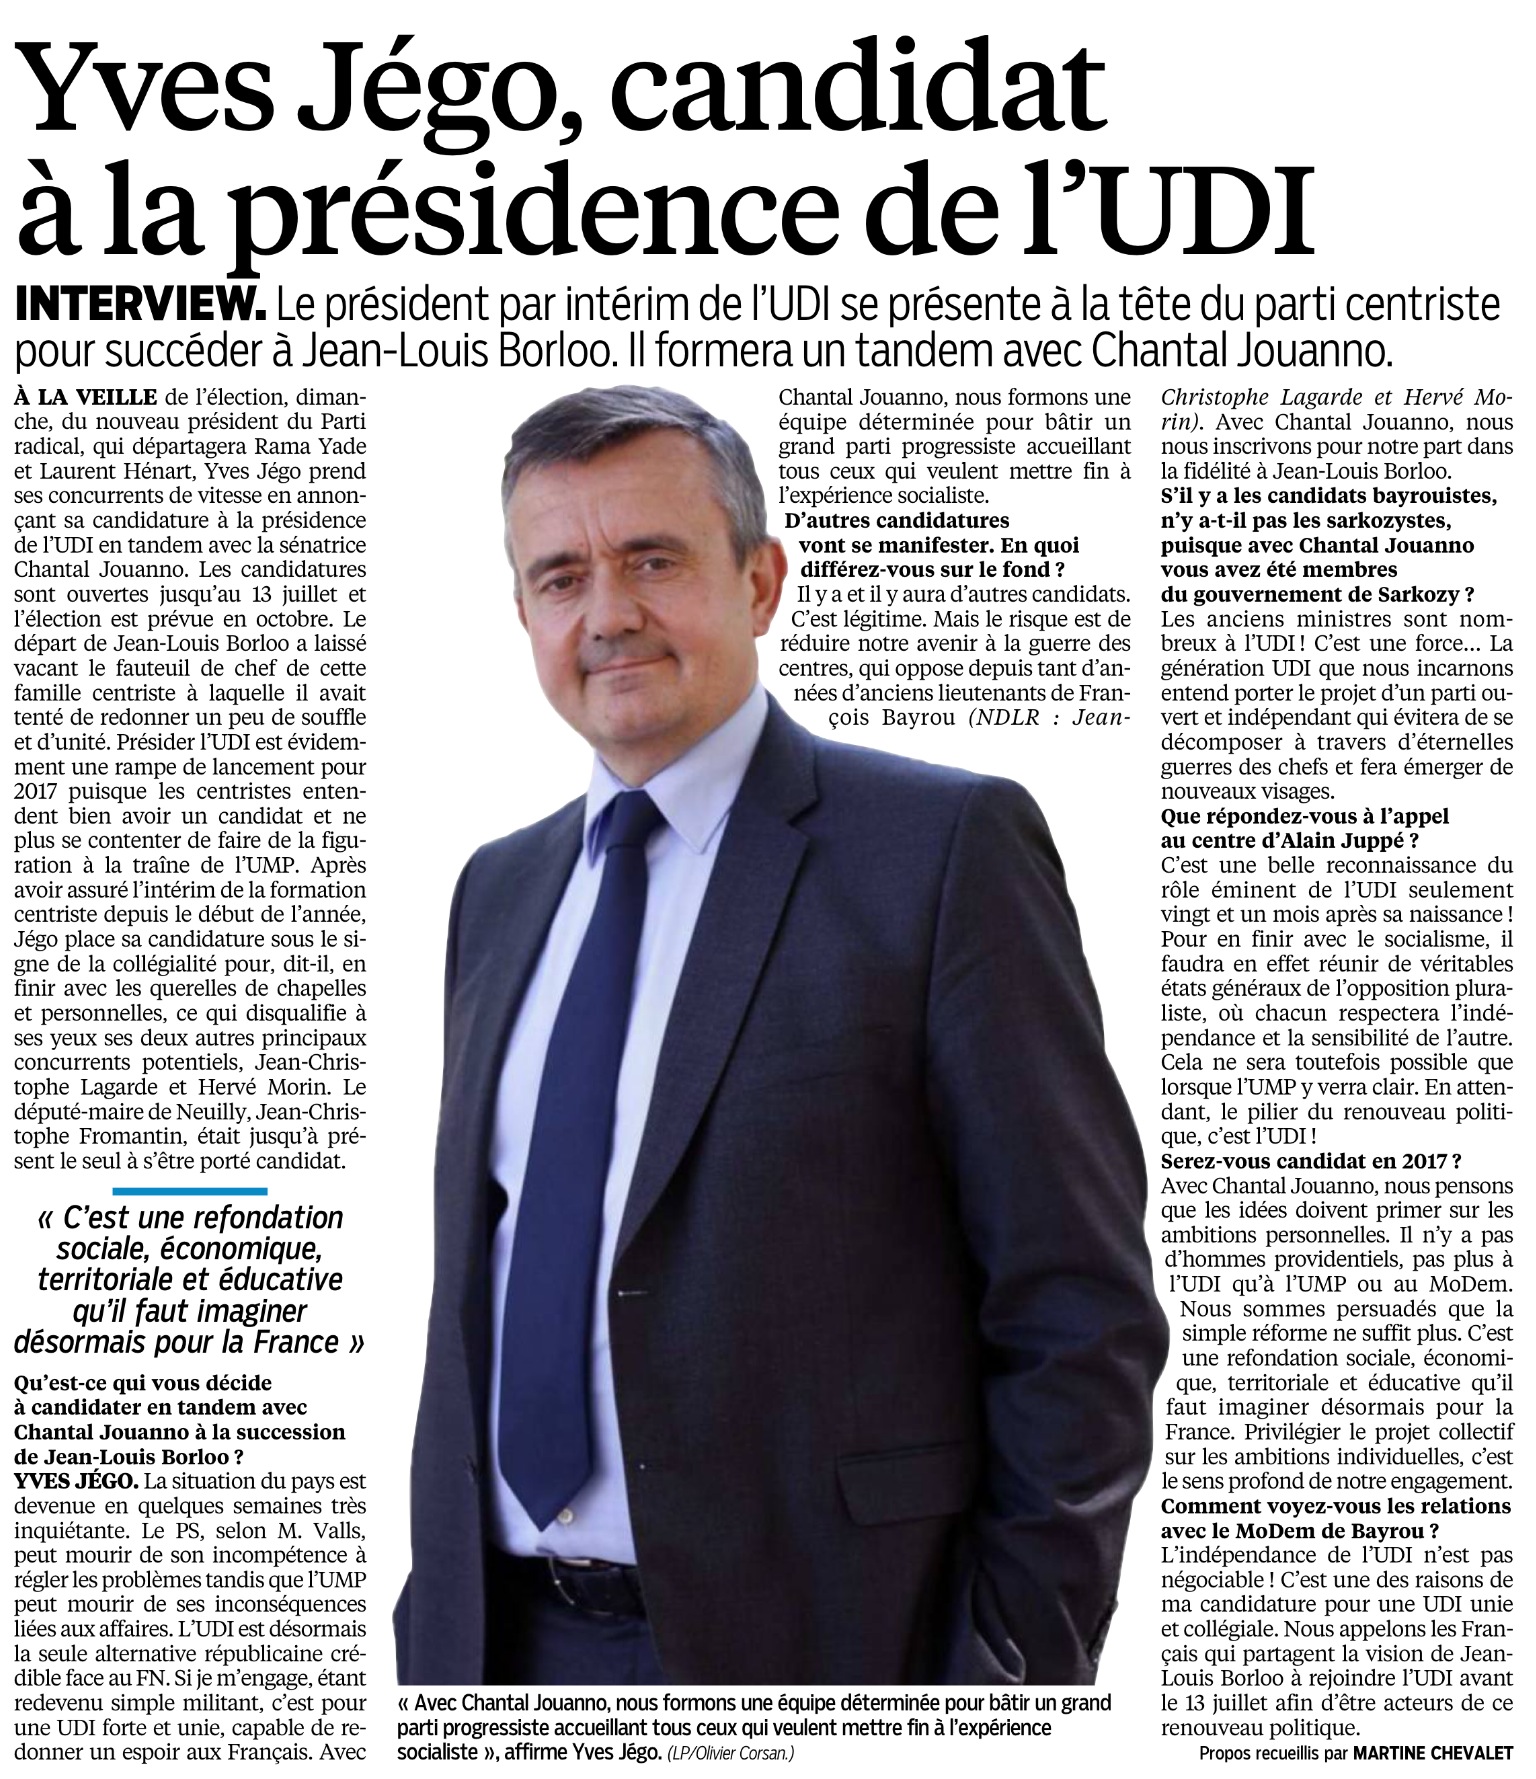 Le Parisien du 21 juin 2014 - Yves Jégo candidat à l'UDI